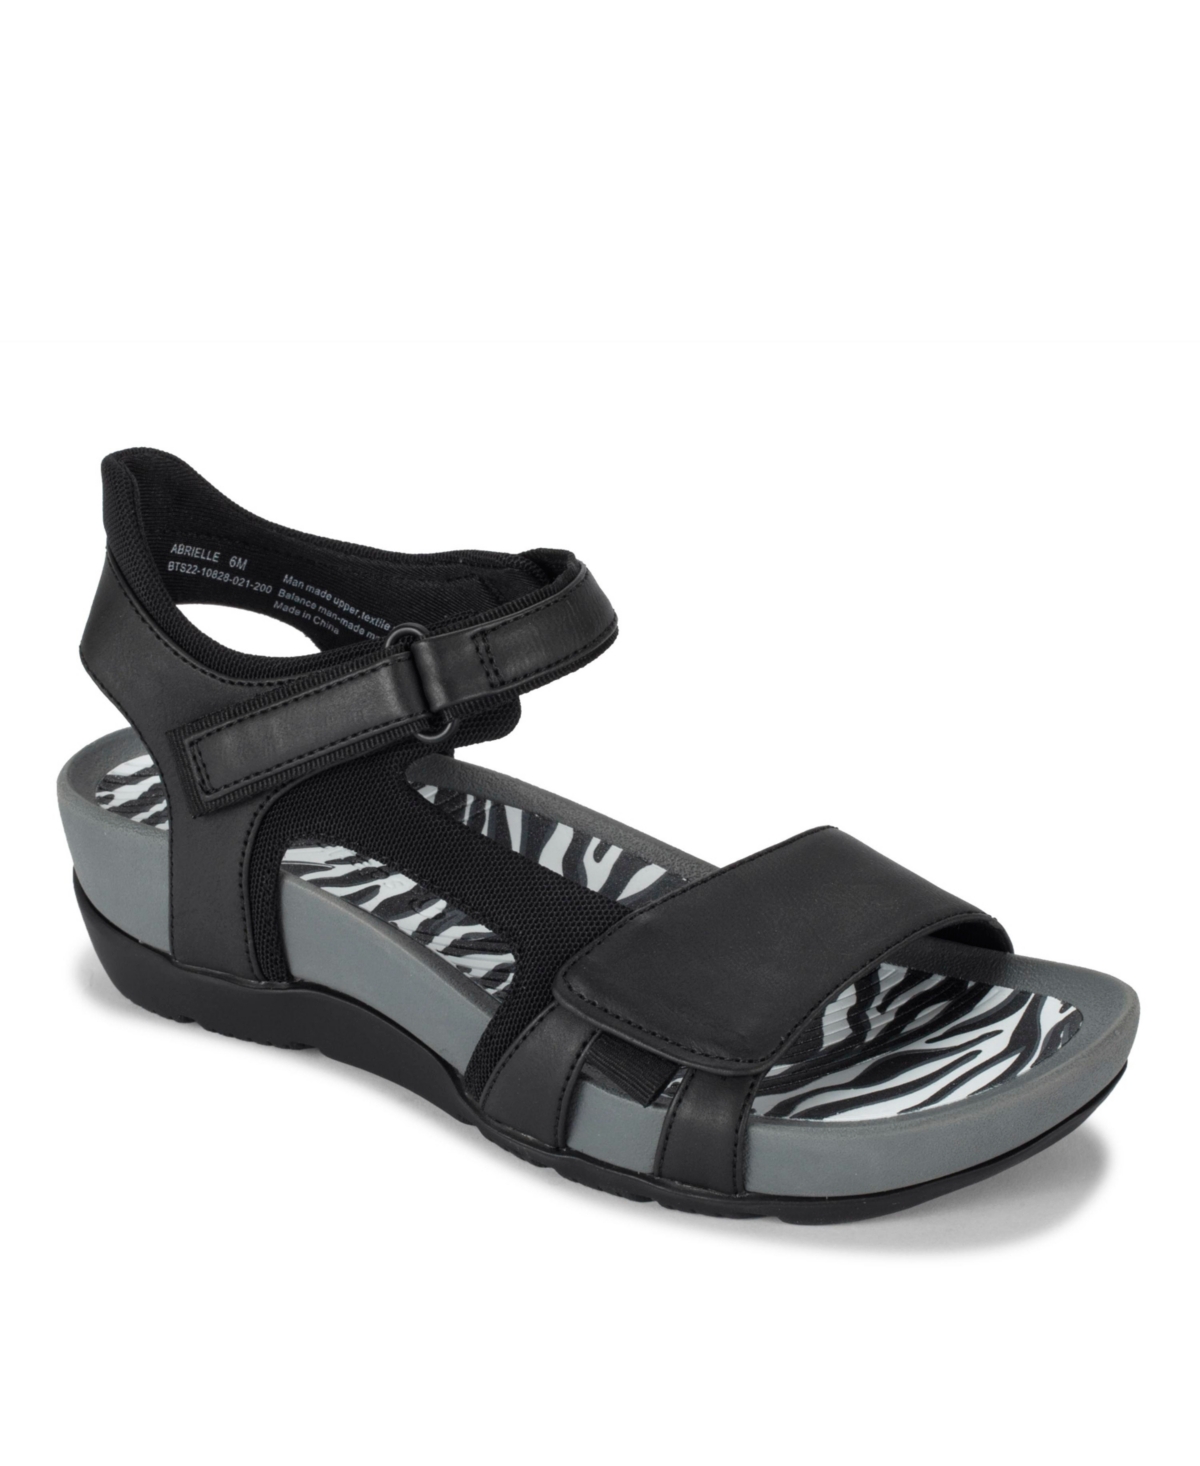 Baretraps Women's Abrielle Sporty Sandals Women's Shoes